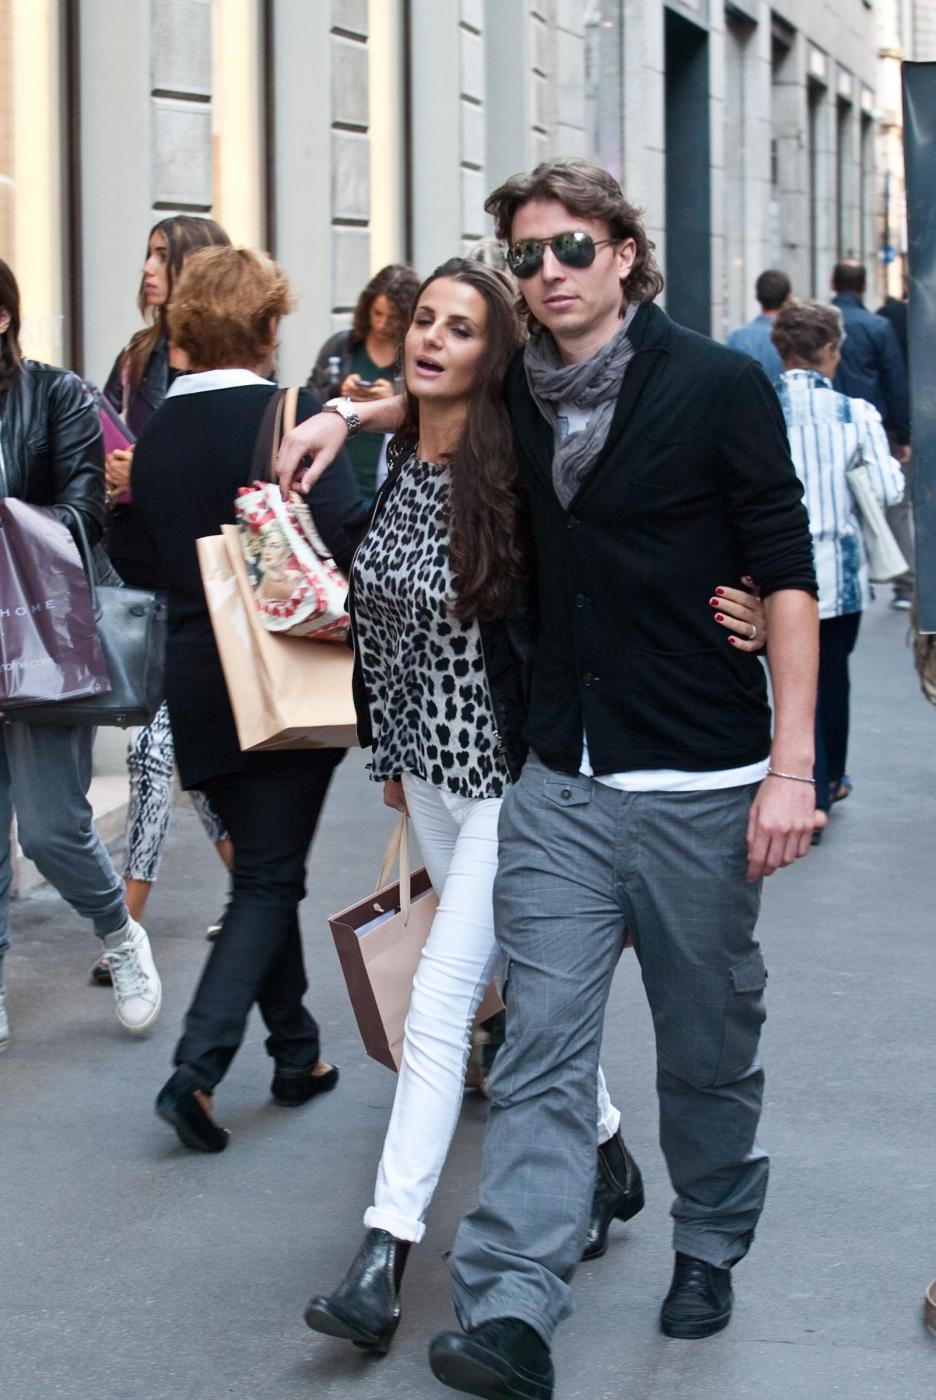 Riccardo Montolivo e Cristina De Pin shopping a Milano02